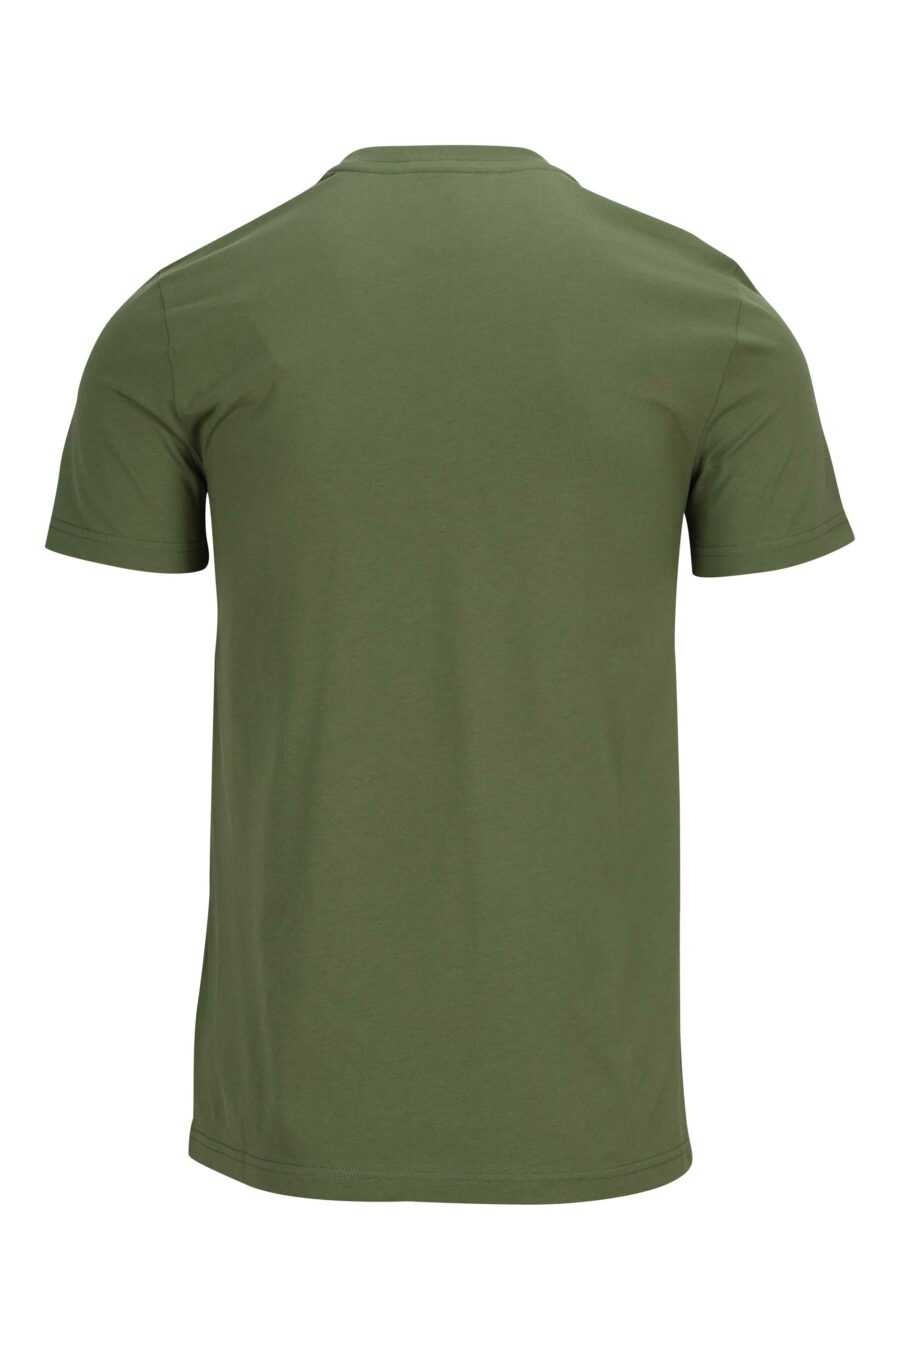 T-shirt verde militar de algodão orgânico com maxilogue preto - 889316649246 1